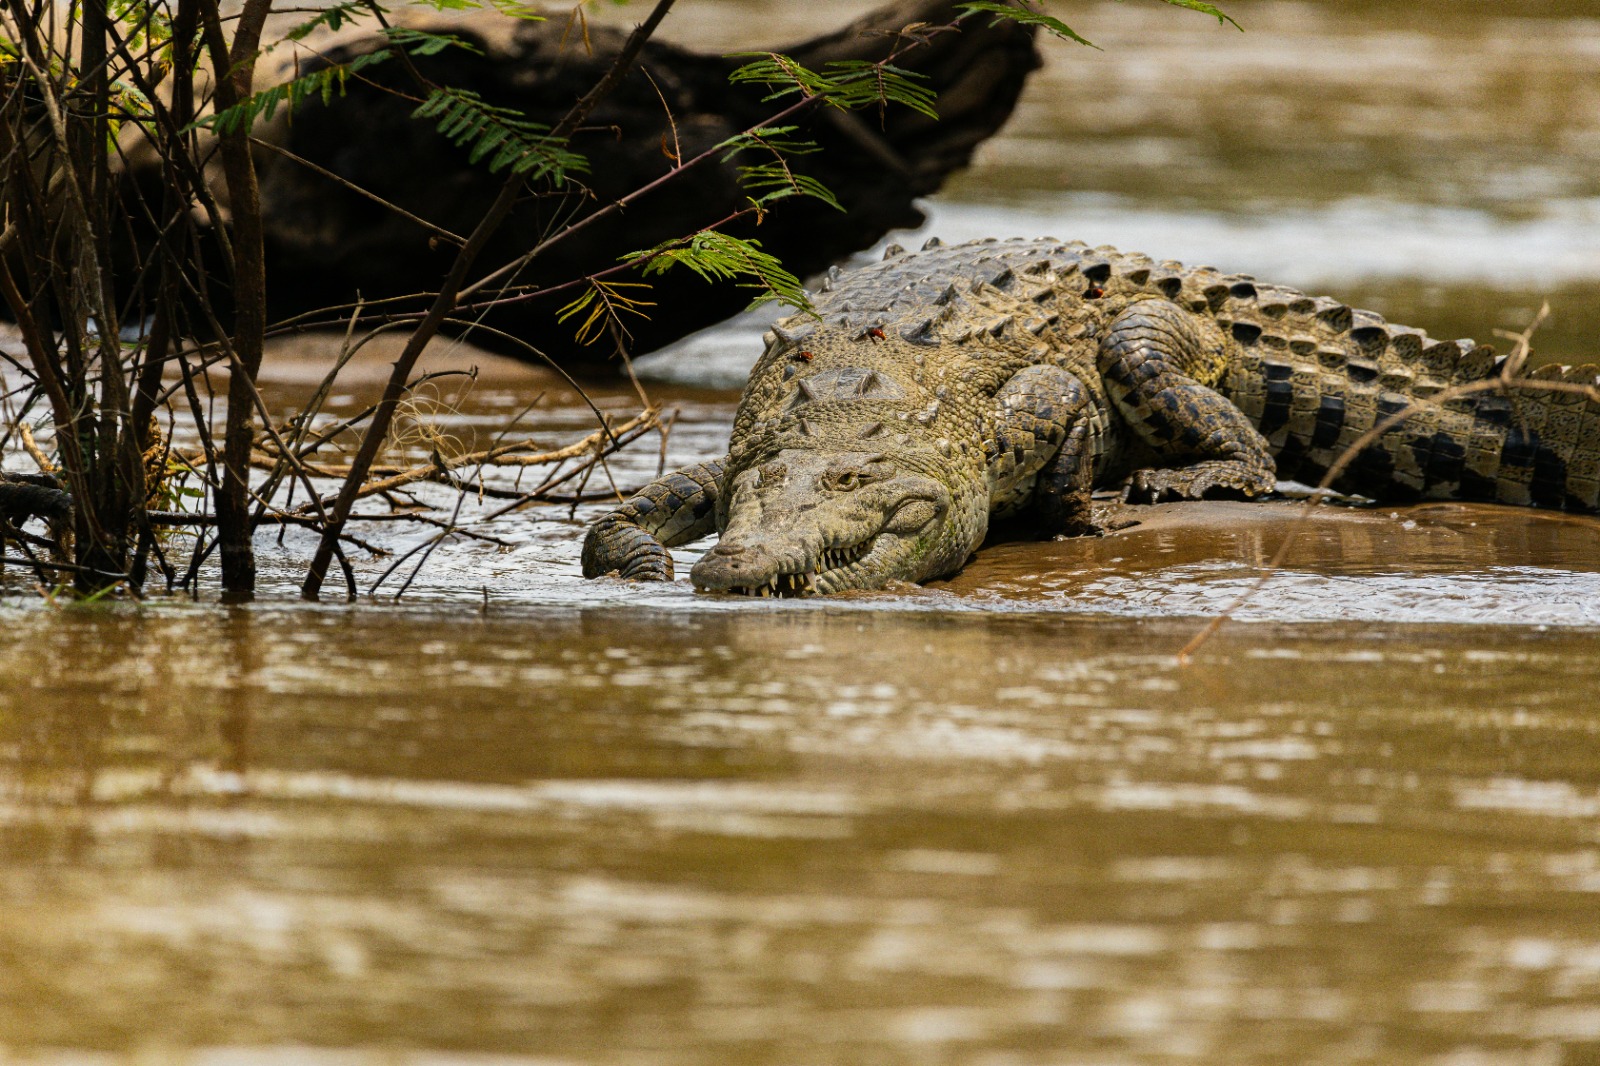 Hombre se lanza a laguna infestada de cocodrilos en Tabasco: ¿Imprudencia o acto desesperado?